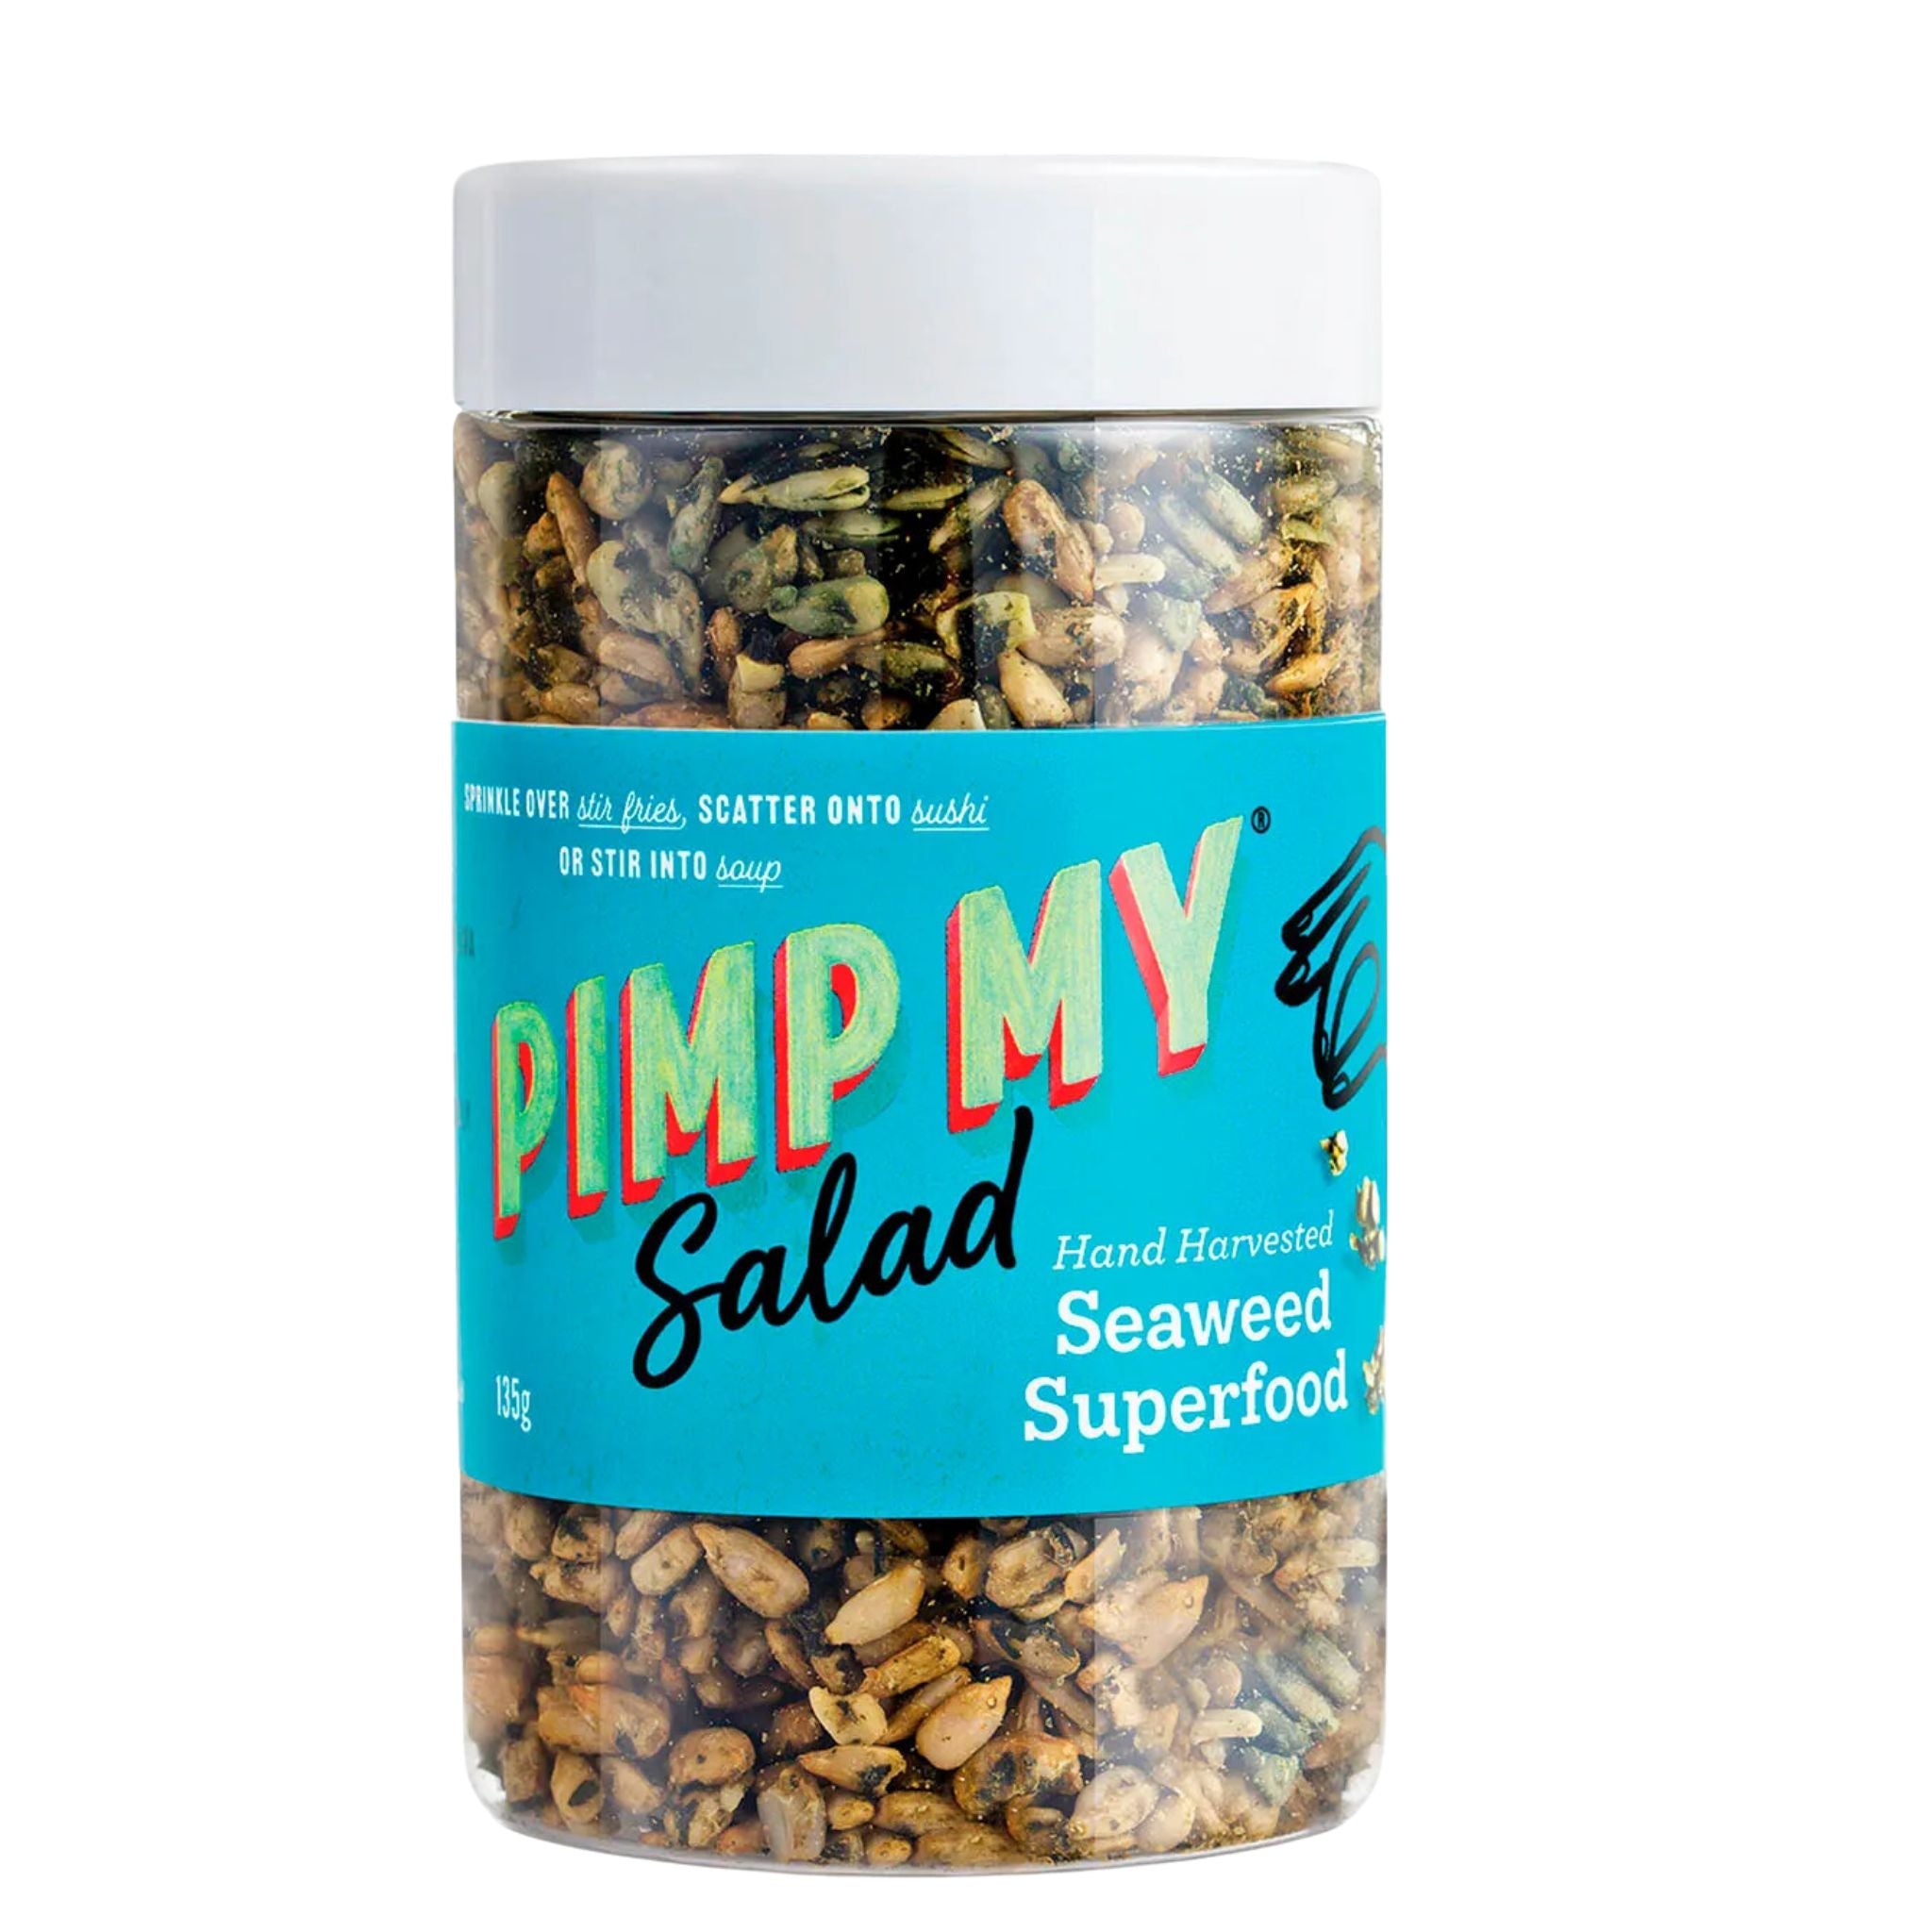 Seaweed Superfood (Vegan) - Pimp My Salad